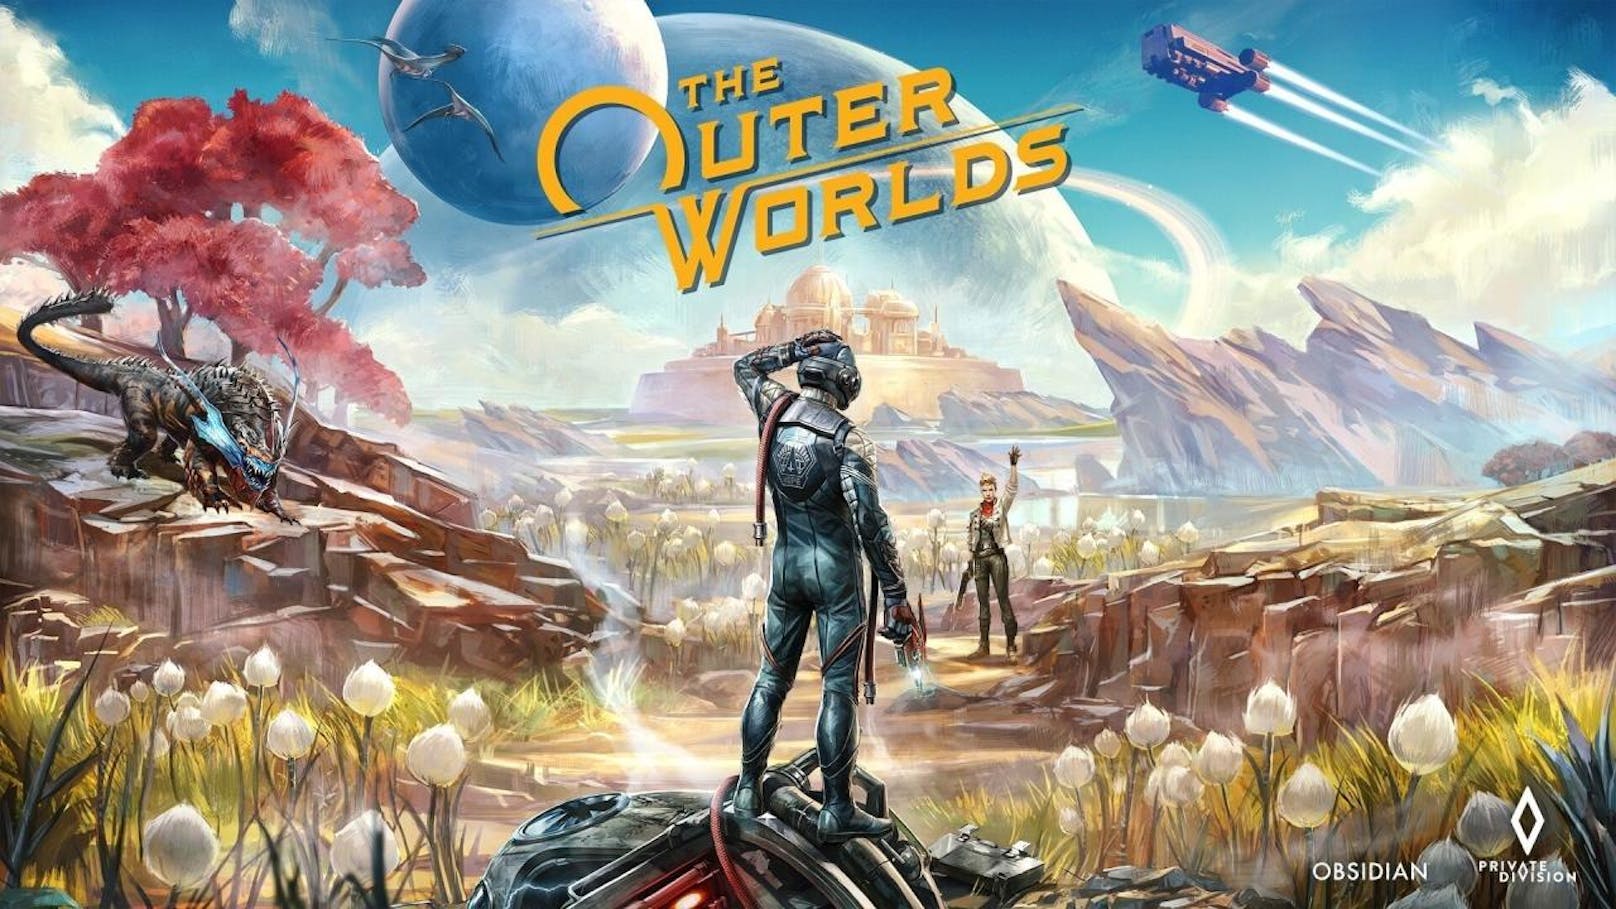 "The Outer World" ist ein schwarzhumoriger Sci-Fi-Western, der eine tiefgehende Handlung, abgedrehte Charaktere, eine tolles Art Design und Rollenspiel-Freiheiten bietet, die viele andere games vermissen lassen. In diesen Belangen kann es sich mit Game-Größen wie "Fallout", Bioshock", "Far Cry" und "Mass Effect" locker messen.